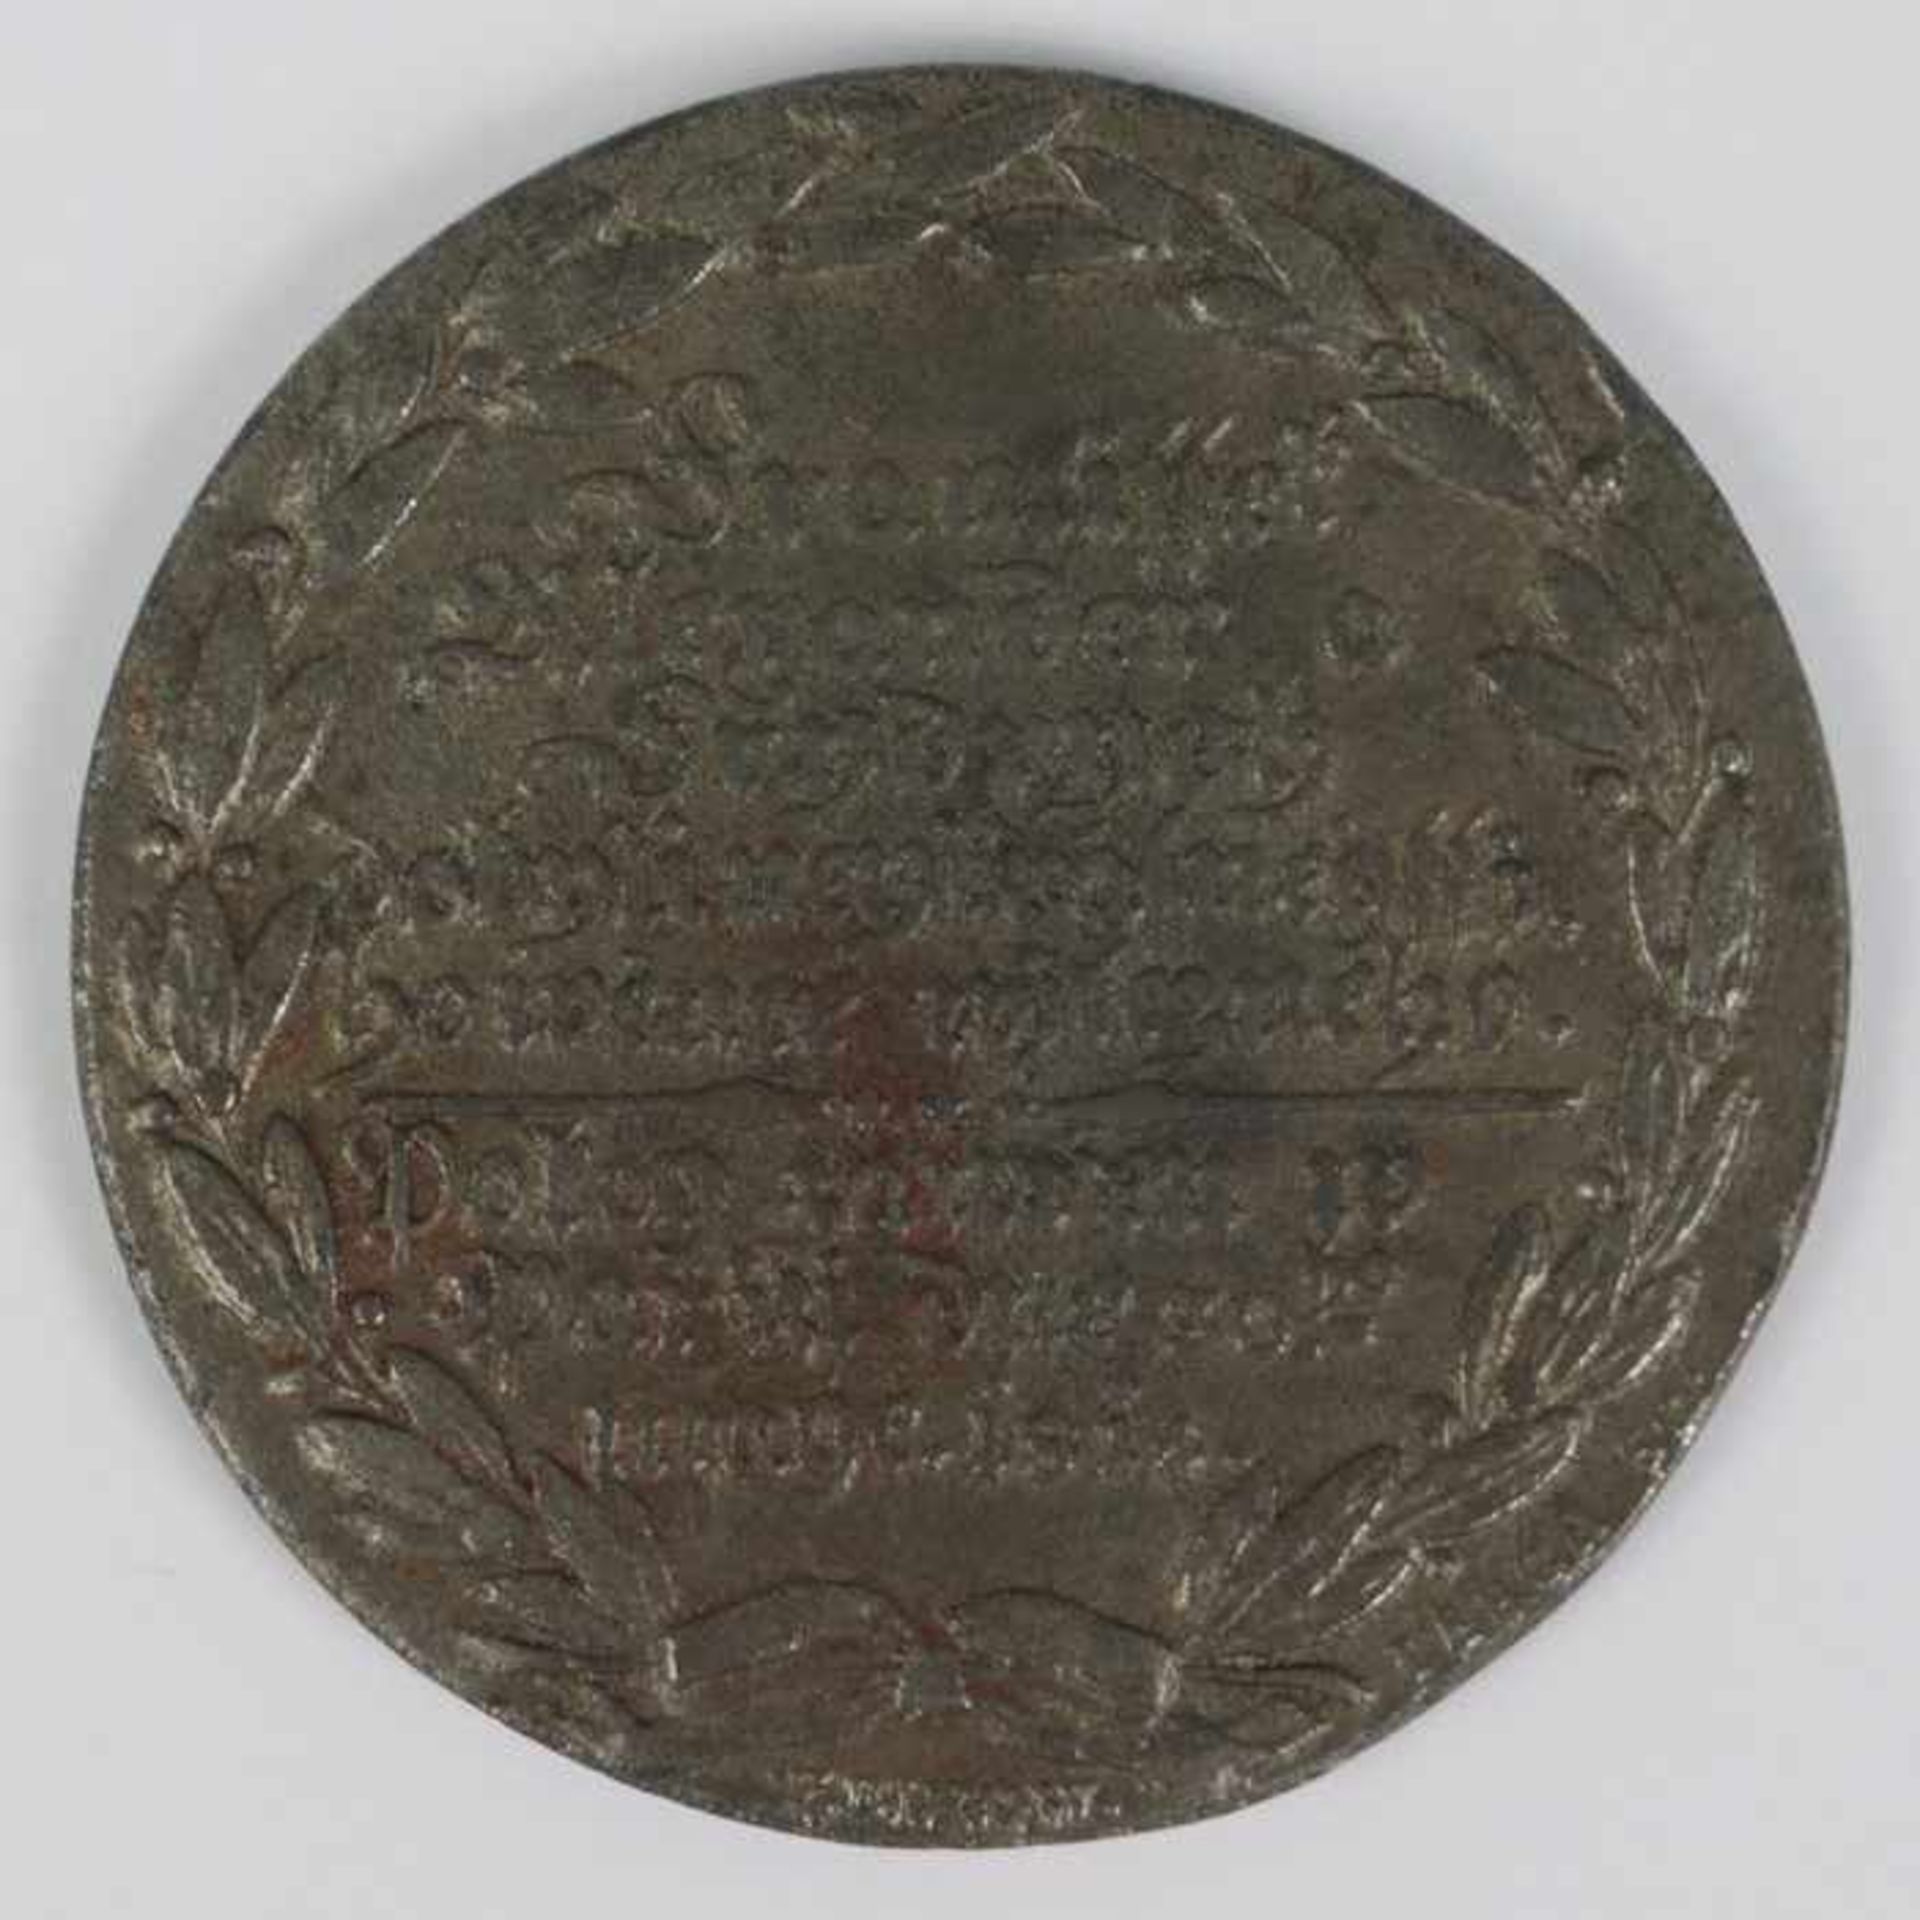 Medaille 1814unleserlich, wohl Slawisch, D 5,2 cm- - -20.00 % buyer's premium on the hammer